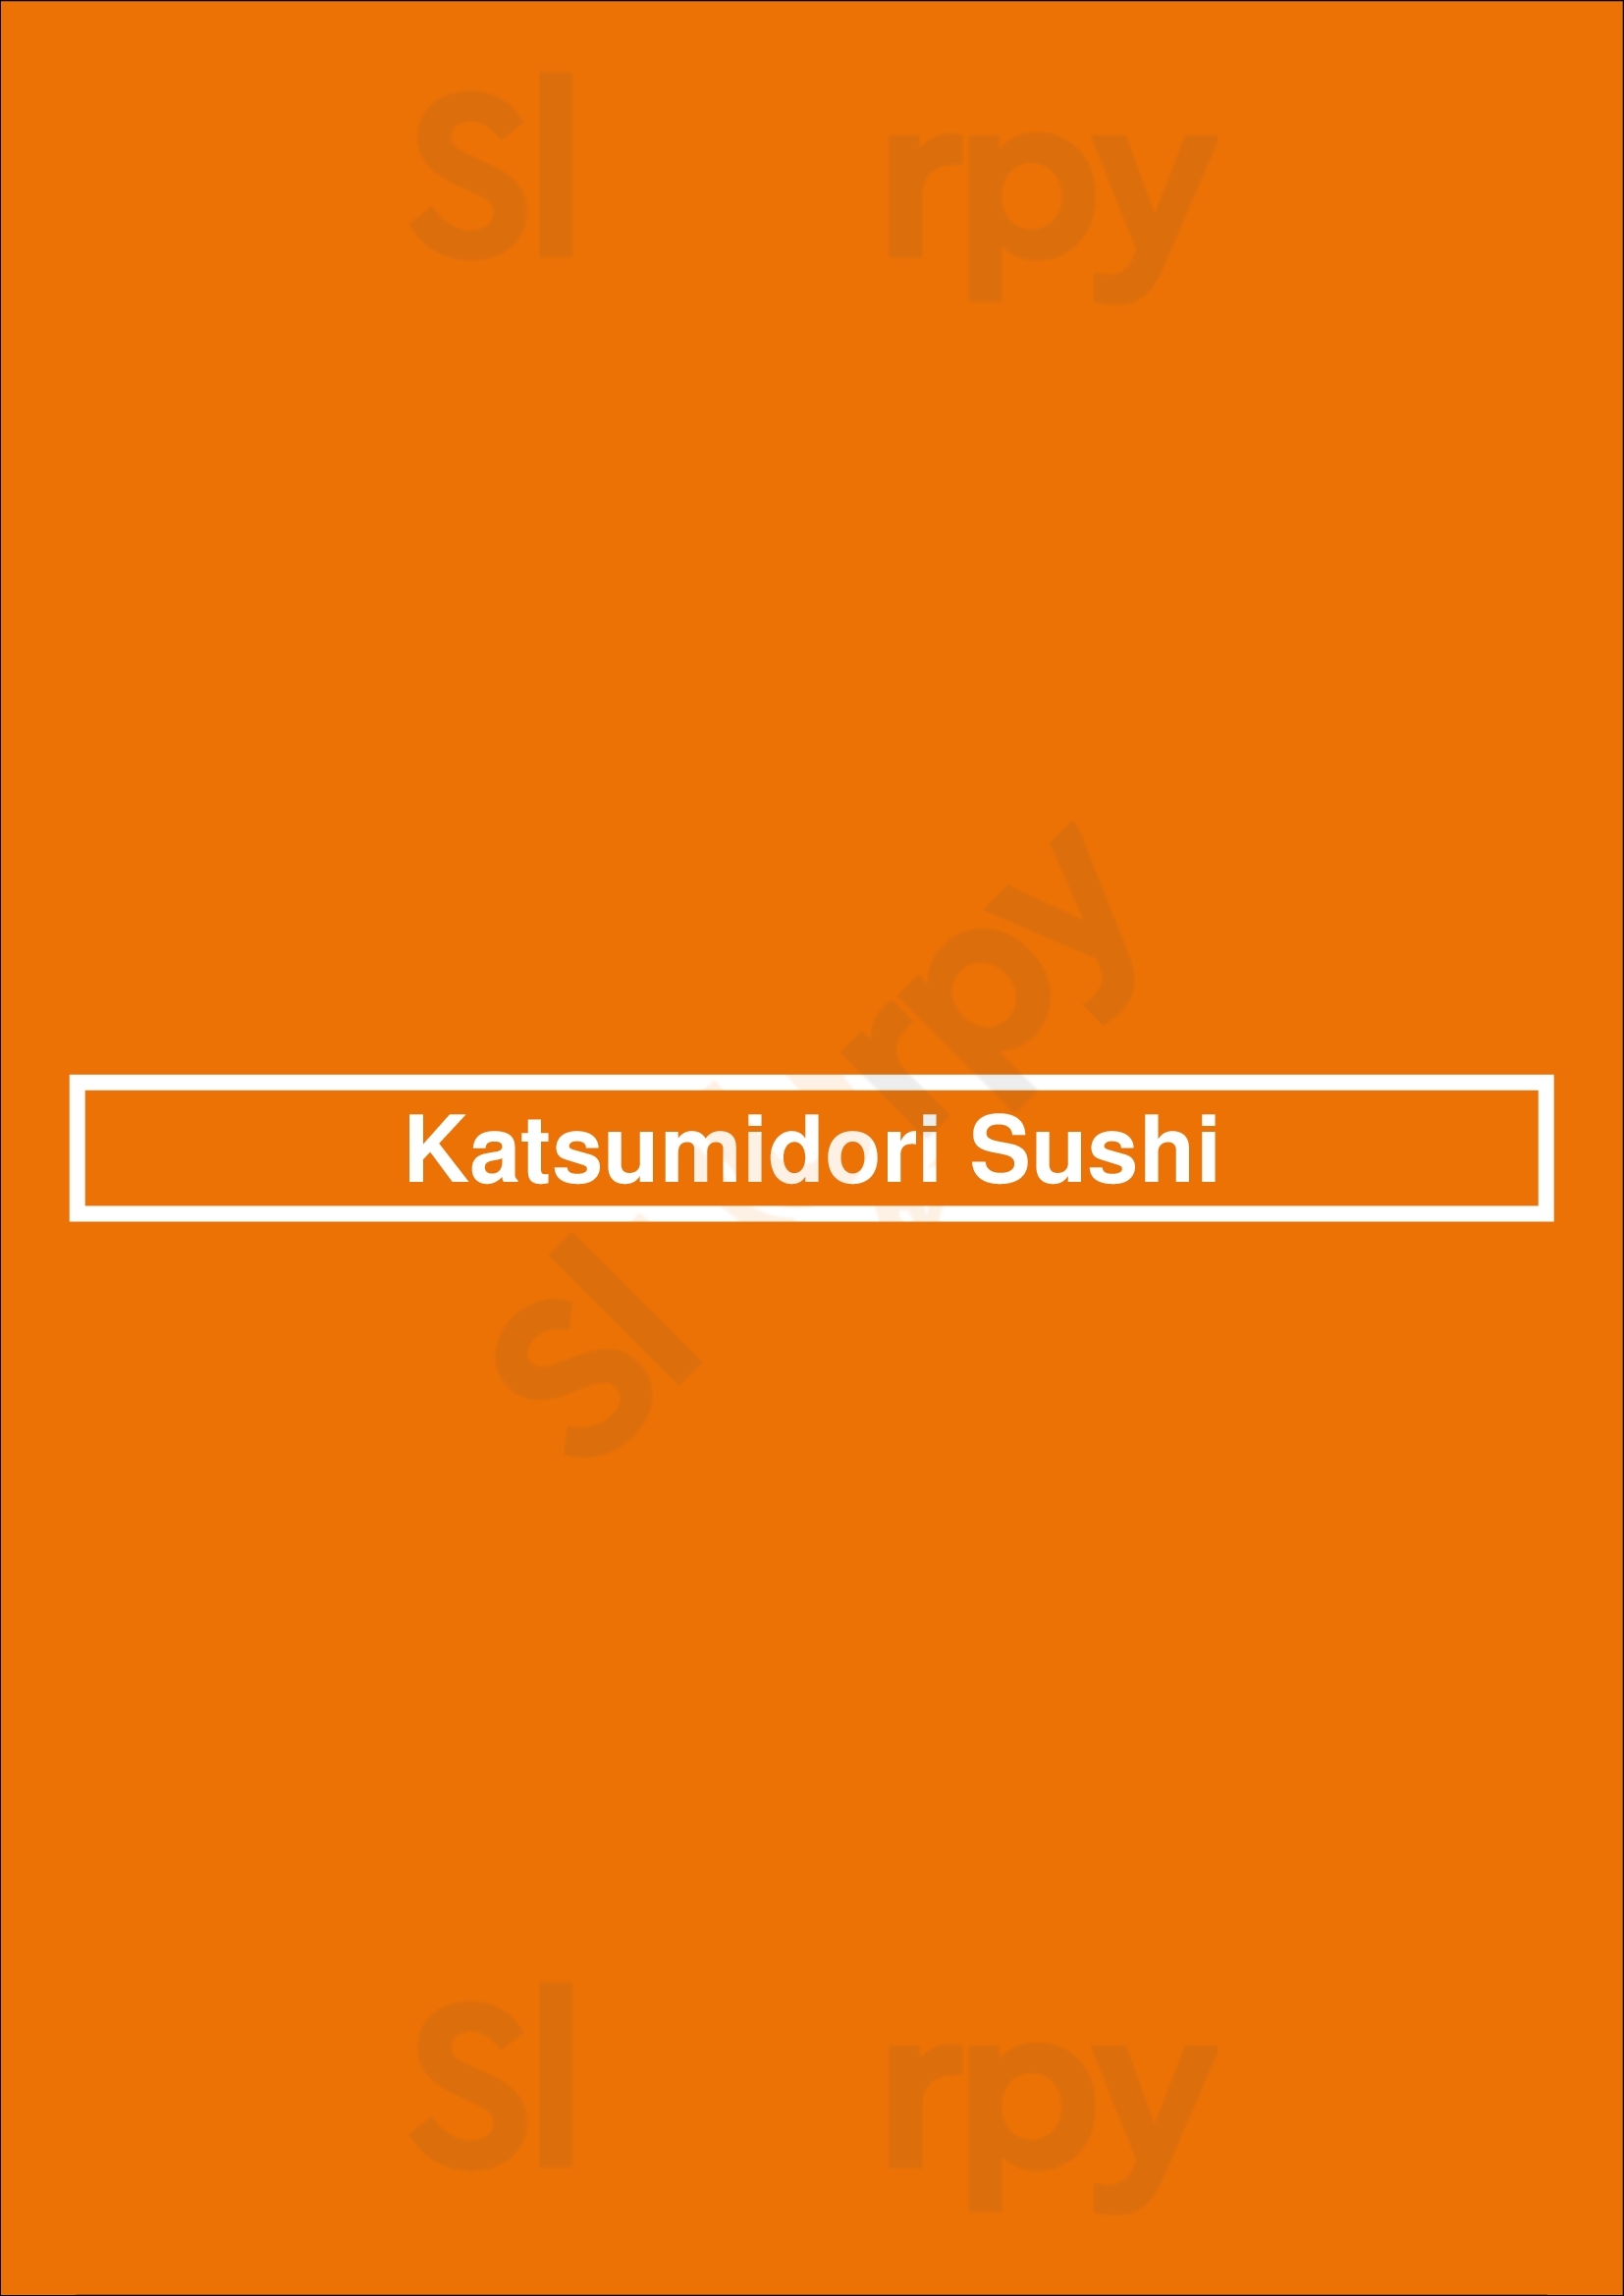 Katsumidori Sushi Tokyo Honolulu Menu - 1